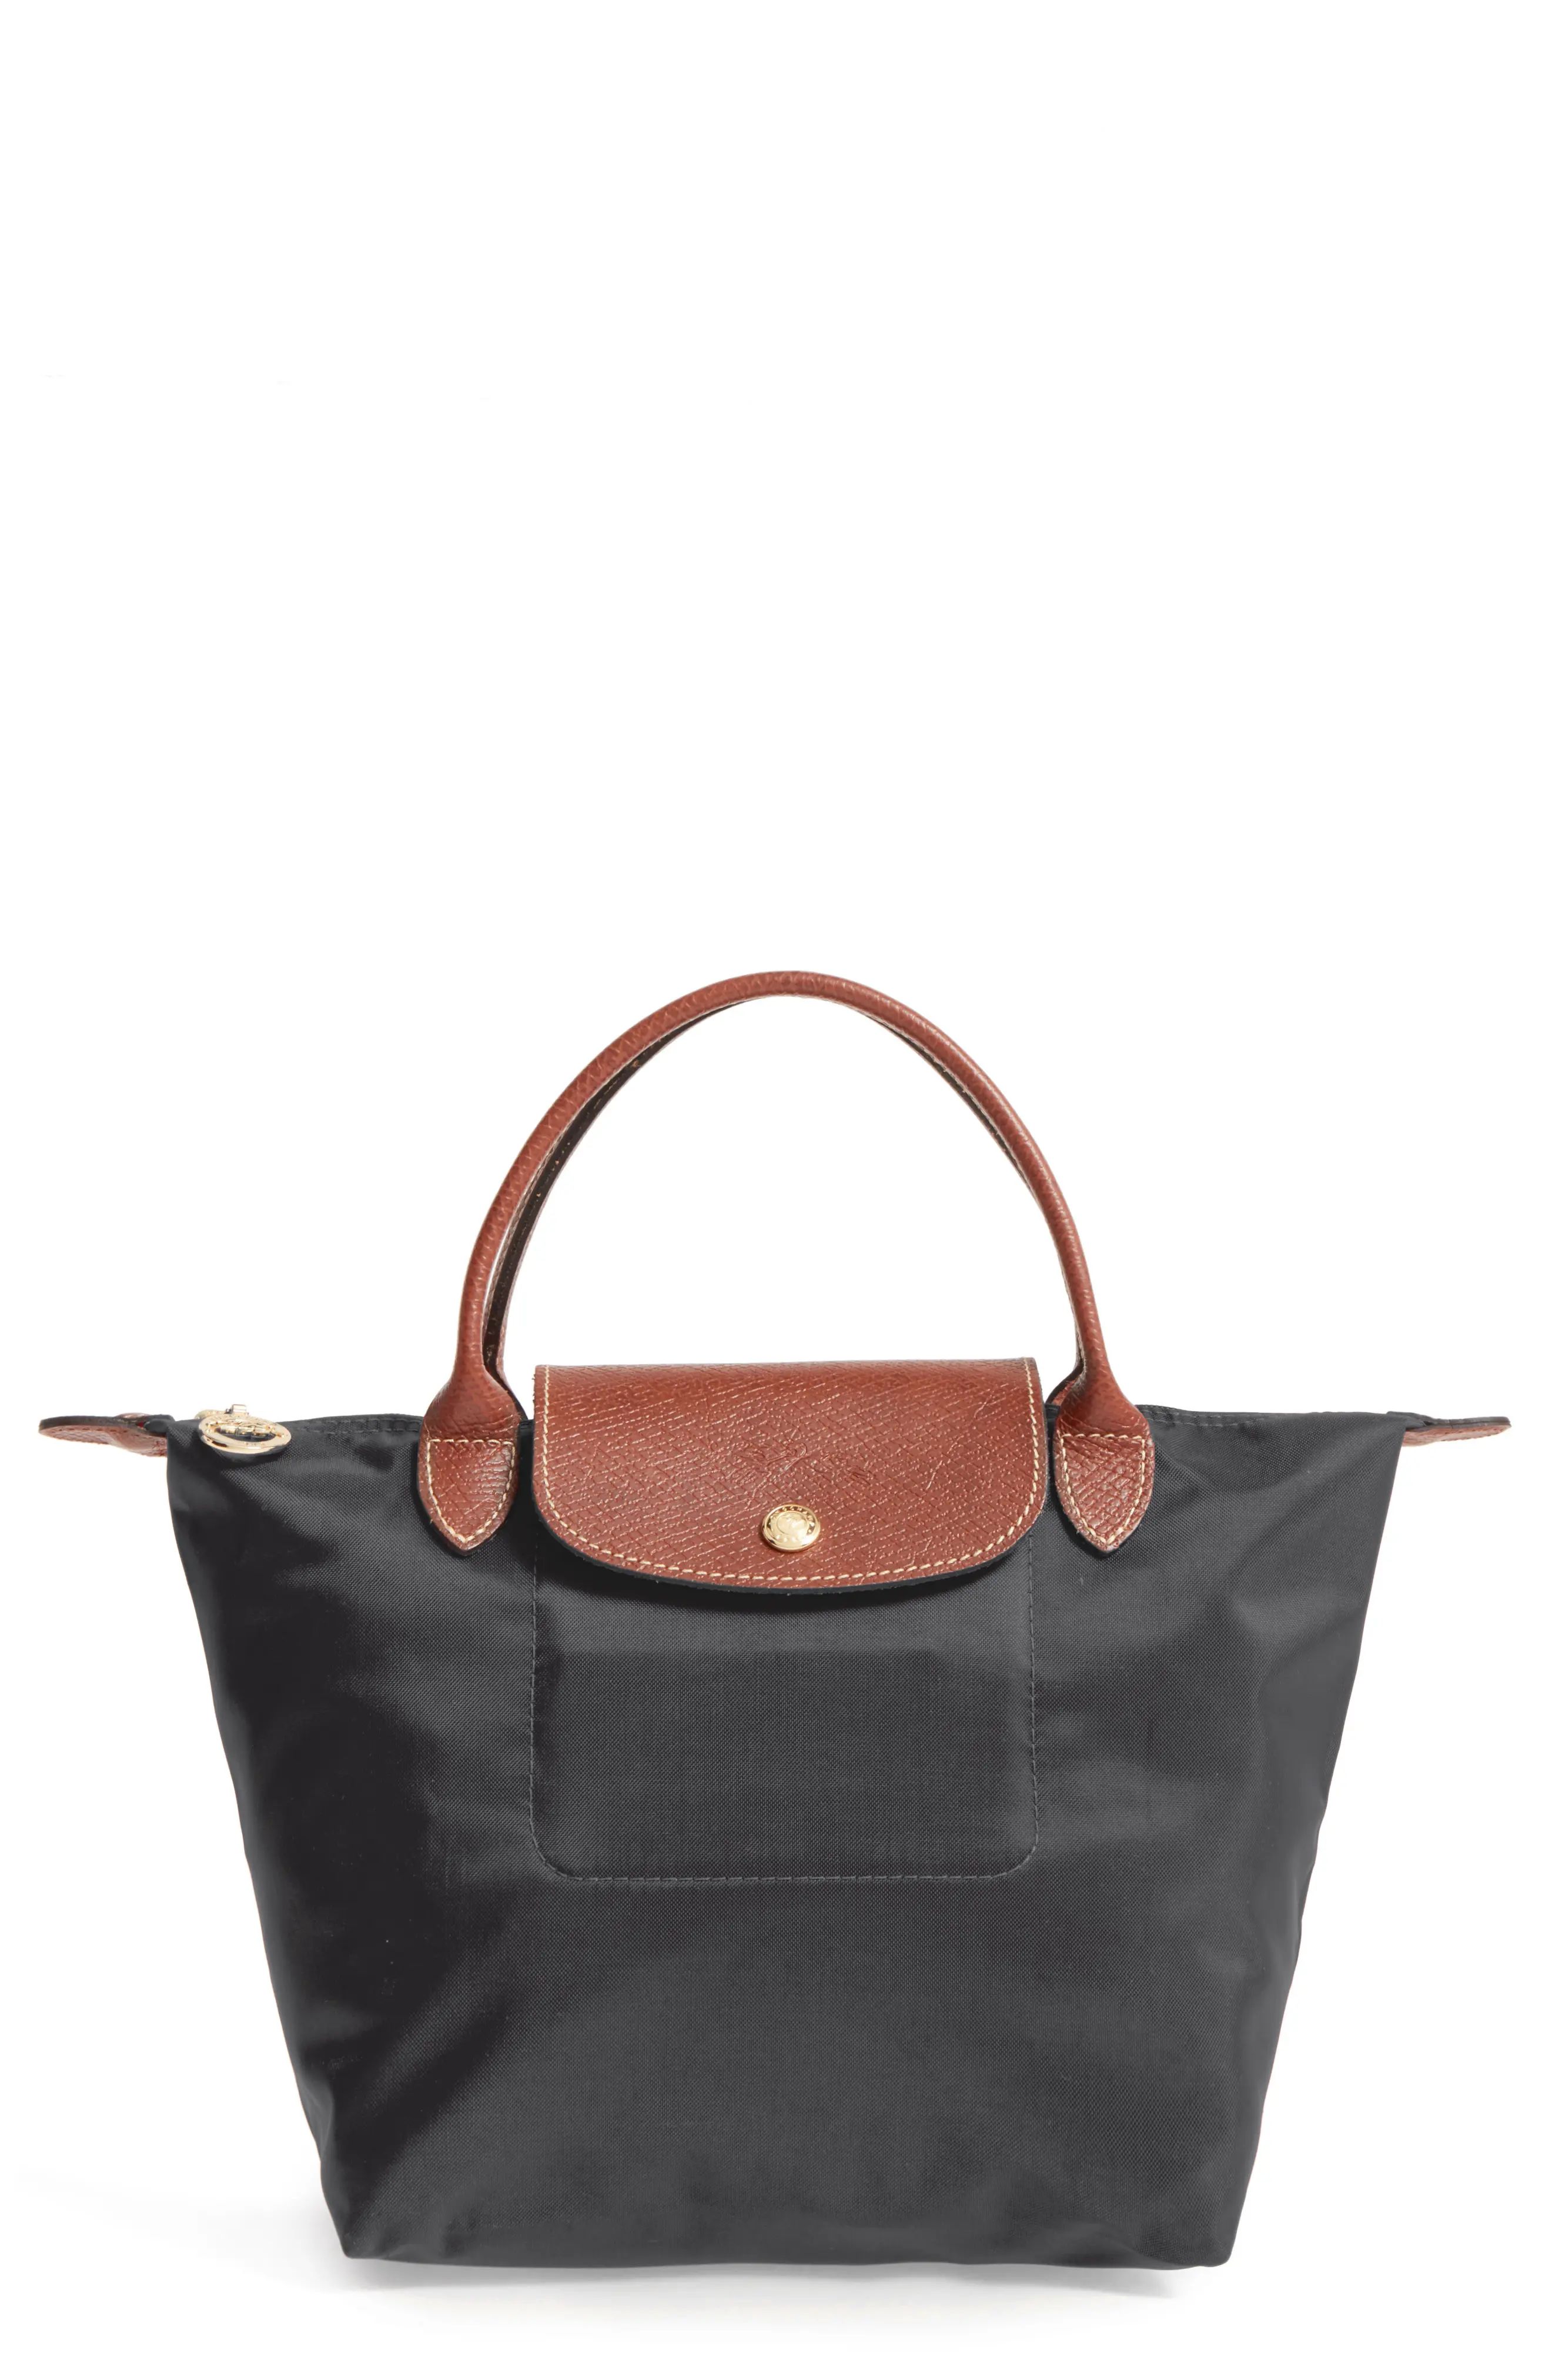 Longchamp 'Mini Le Pliage' Handbag in Black at Nordstrom | Nordstrom